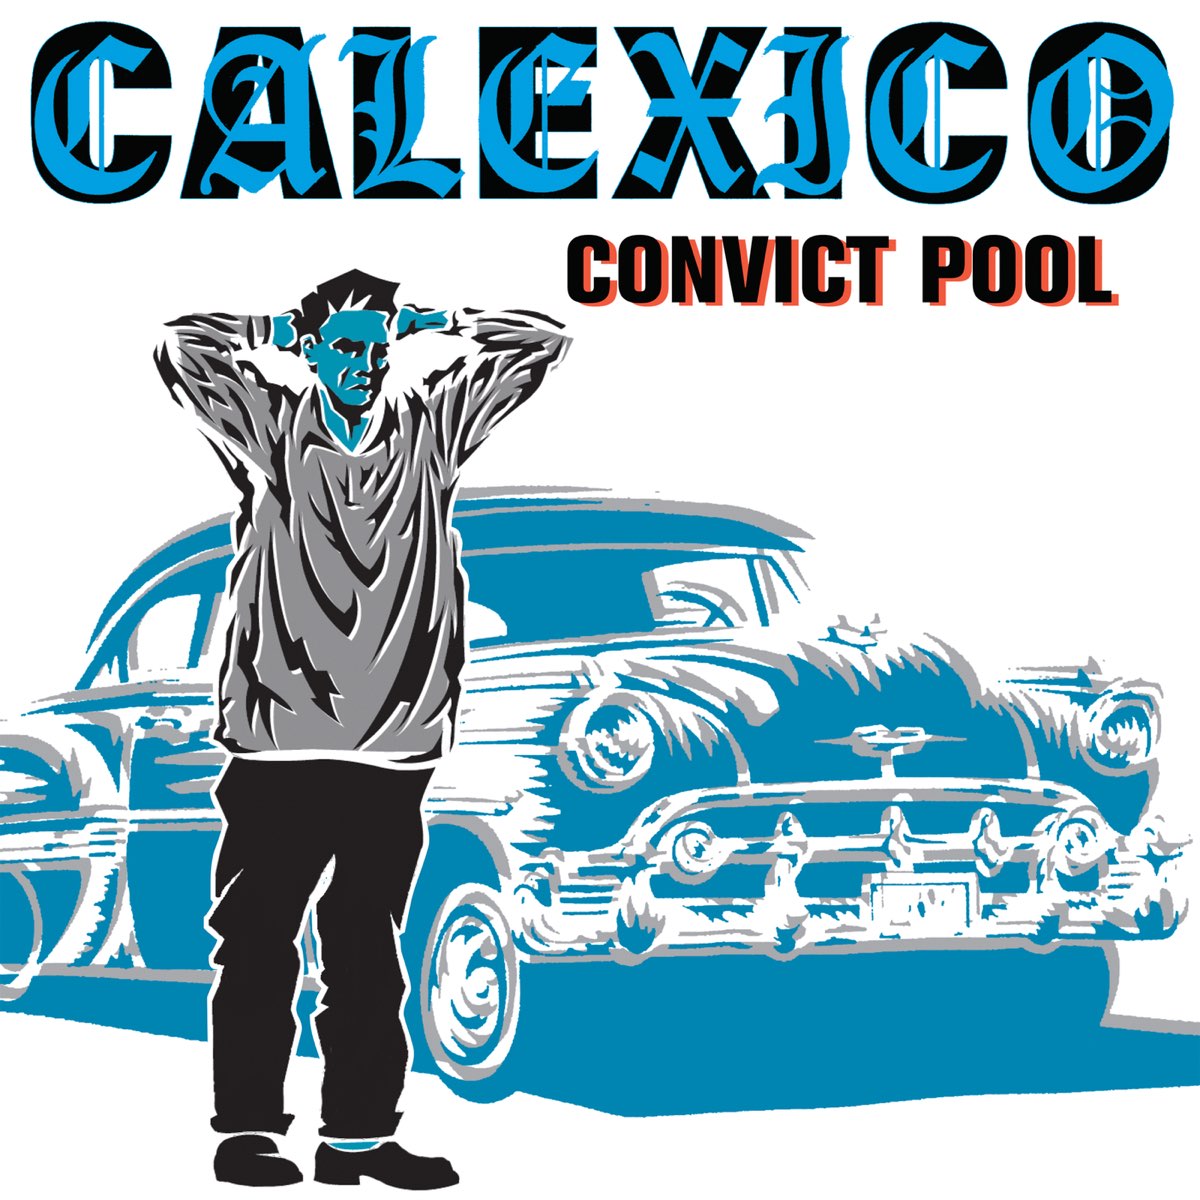 calexico convict pool